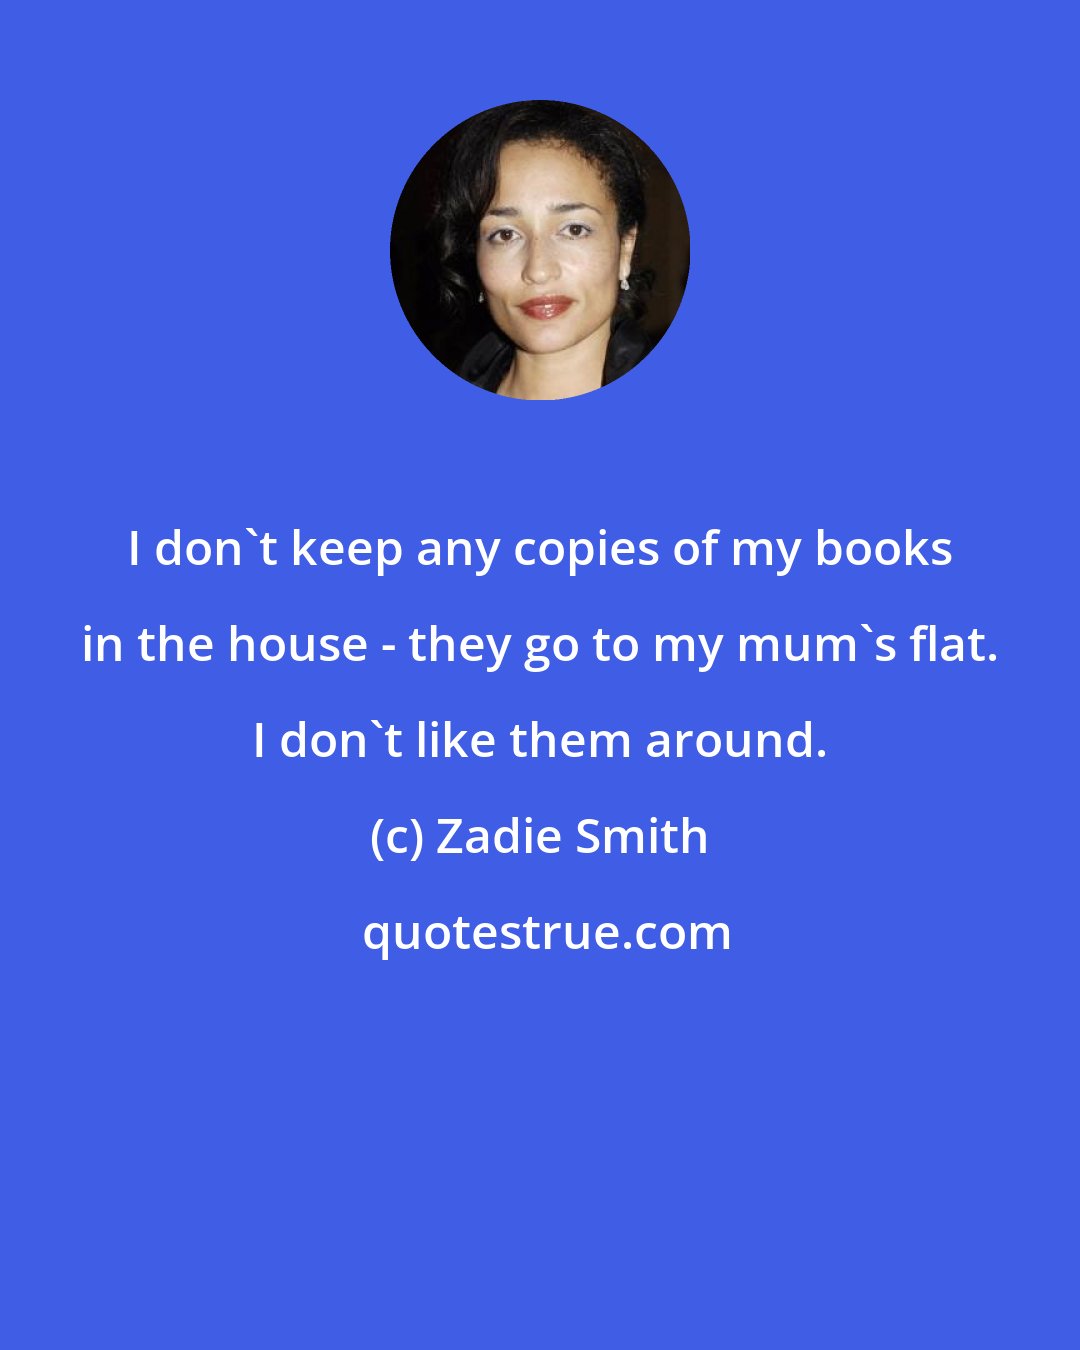 Zadie Smith: I don't keep any copies of my books in the house - they go to my mum's flat. I don't like them around.